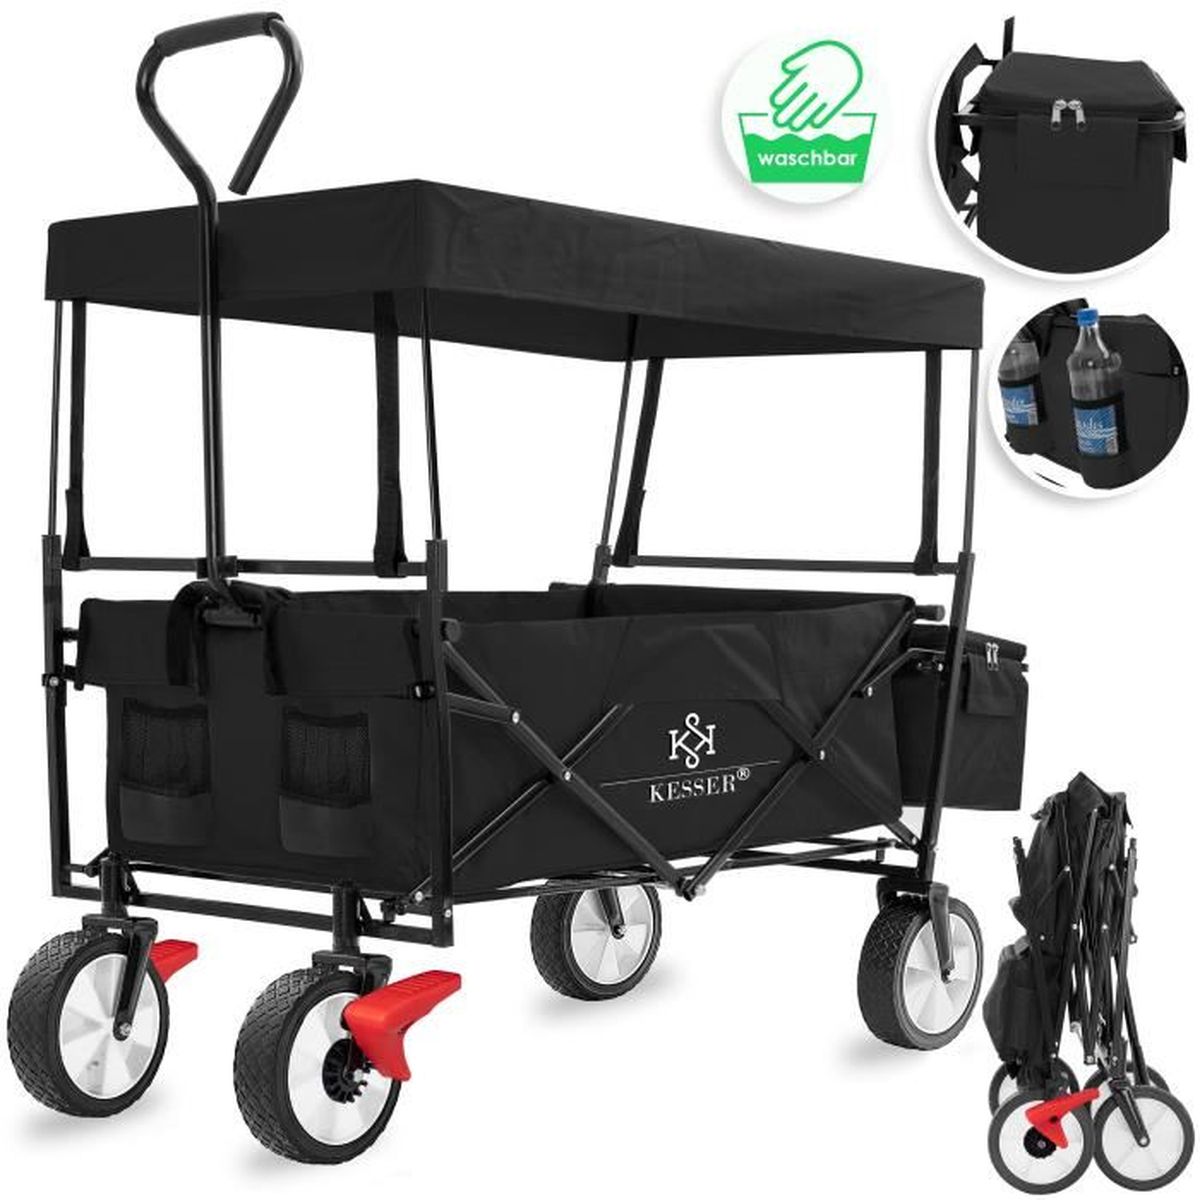 Vert KESSER® Chariot de Transport 550 kg Chariot de Transport Chariot de Jardinage Chariot à Outils Chariot Bras Nouveau 